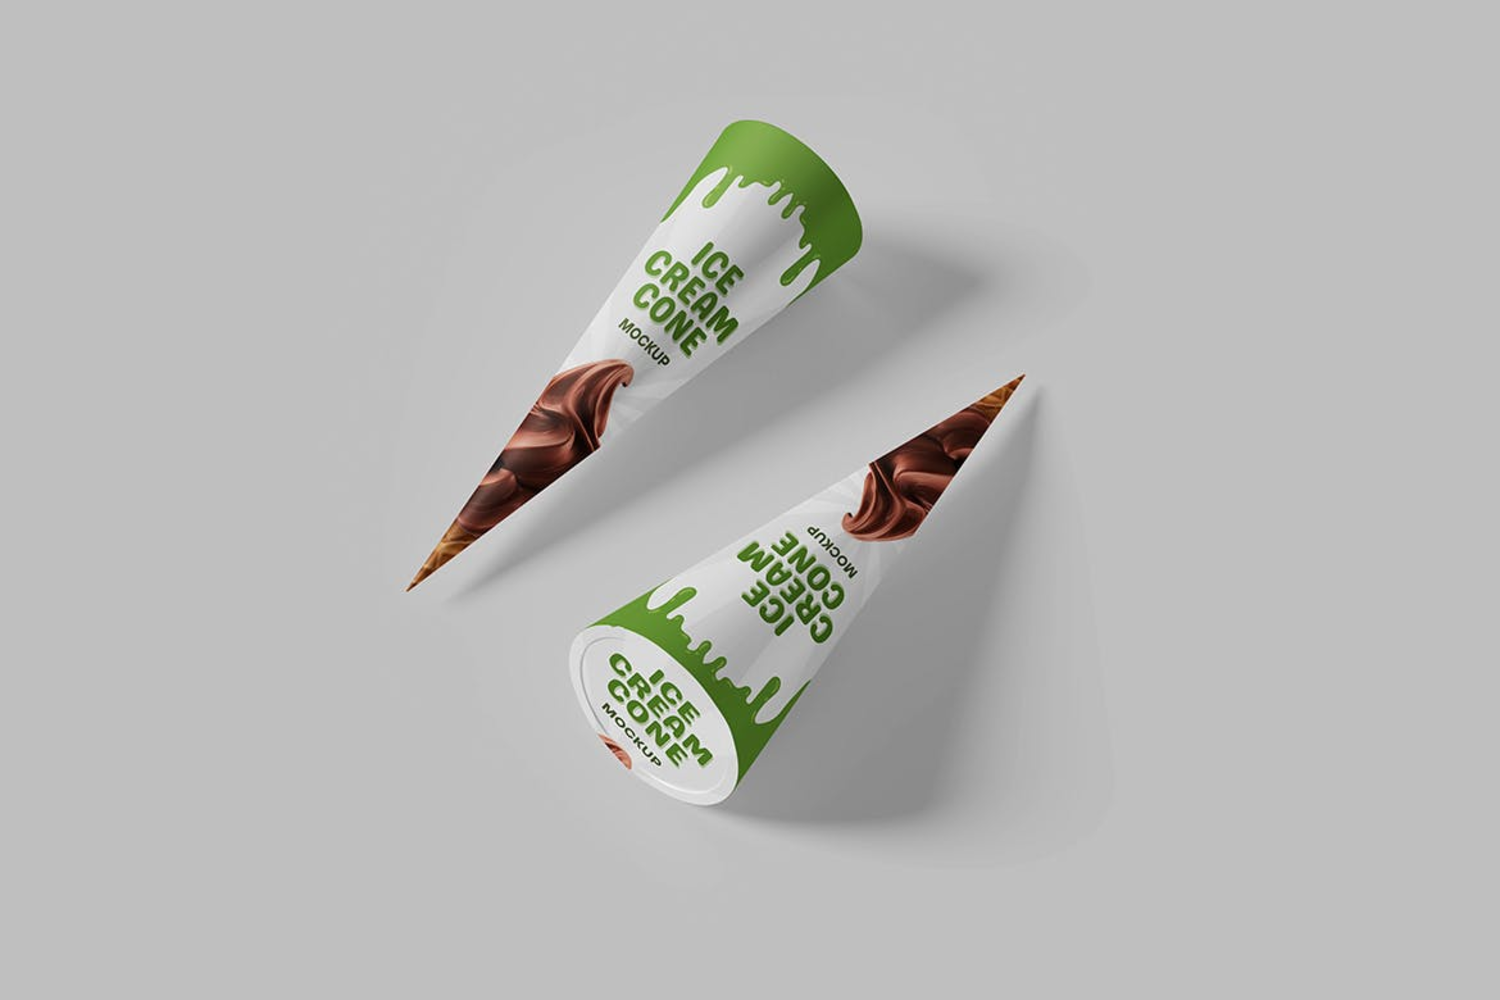 6242 创意设计手工制作美味蛋卷冰淇淋模型样机-ice cream cone mockup